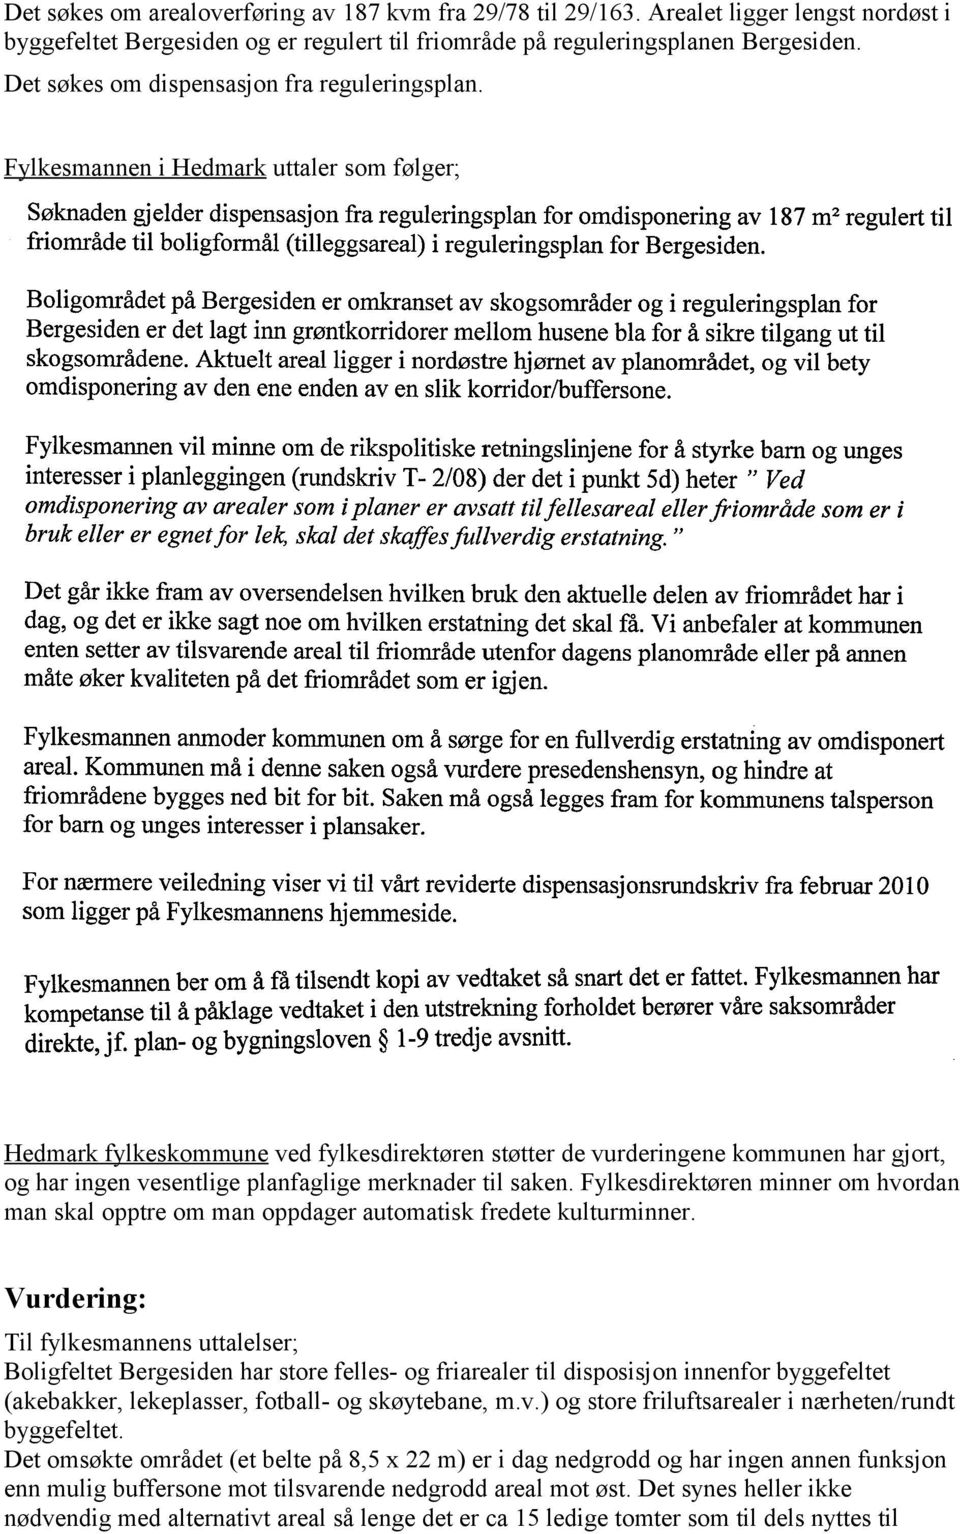 Fylkesmannen i Hedmark uttaler som følger; Hedmark fylkeskommune ved fylkesdirektøren støtter de vurderingene kommunen har gjort, og har ingen vesentlige planfaglige merknader til saken.